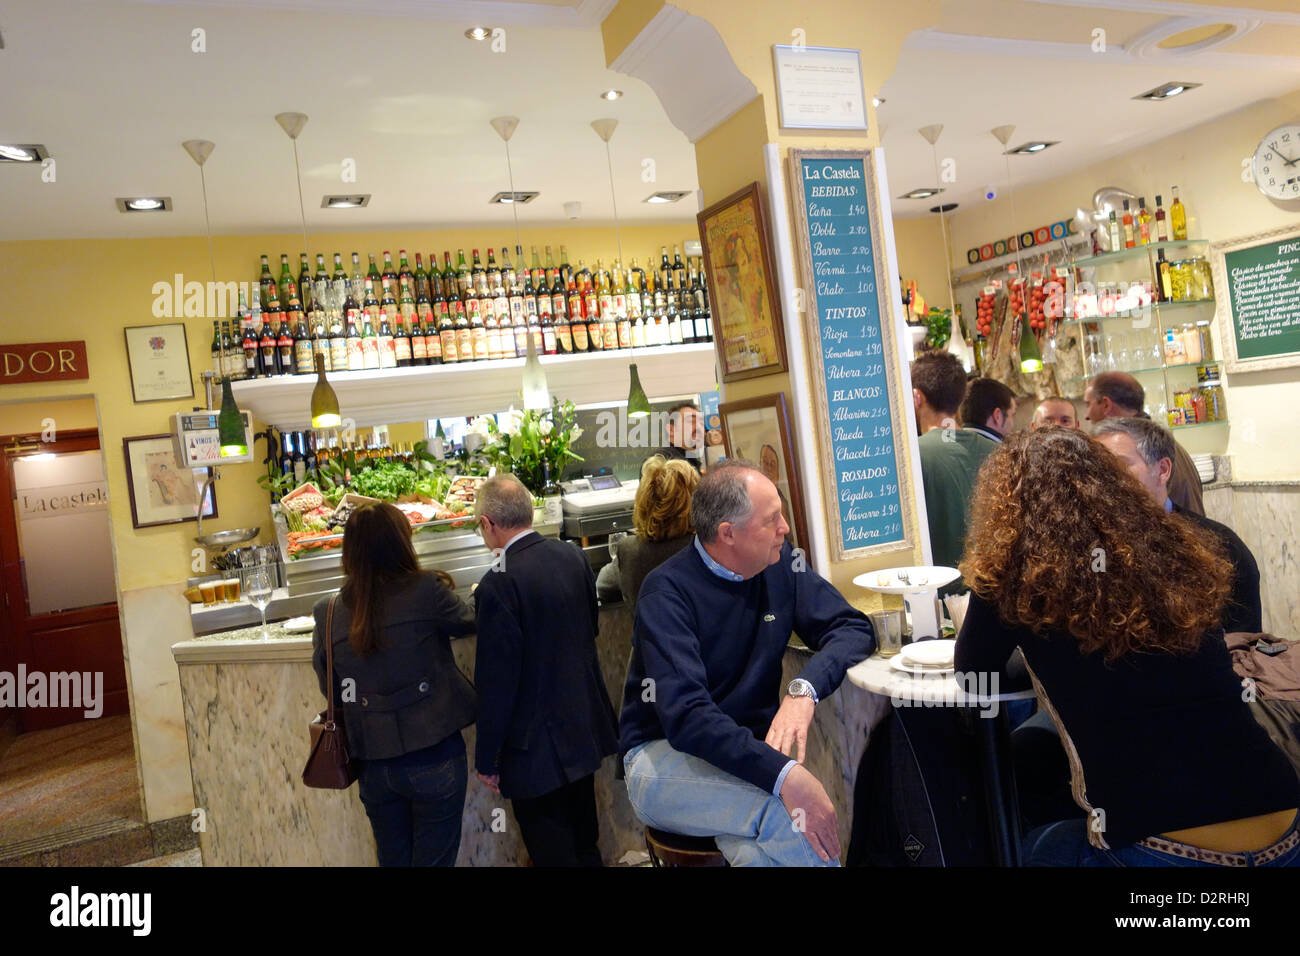 La castela bar madrid spagna vino birra tapas Foto Stock